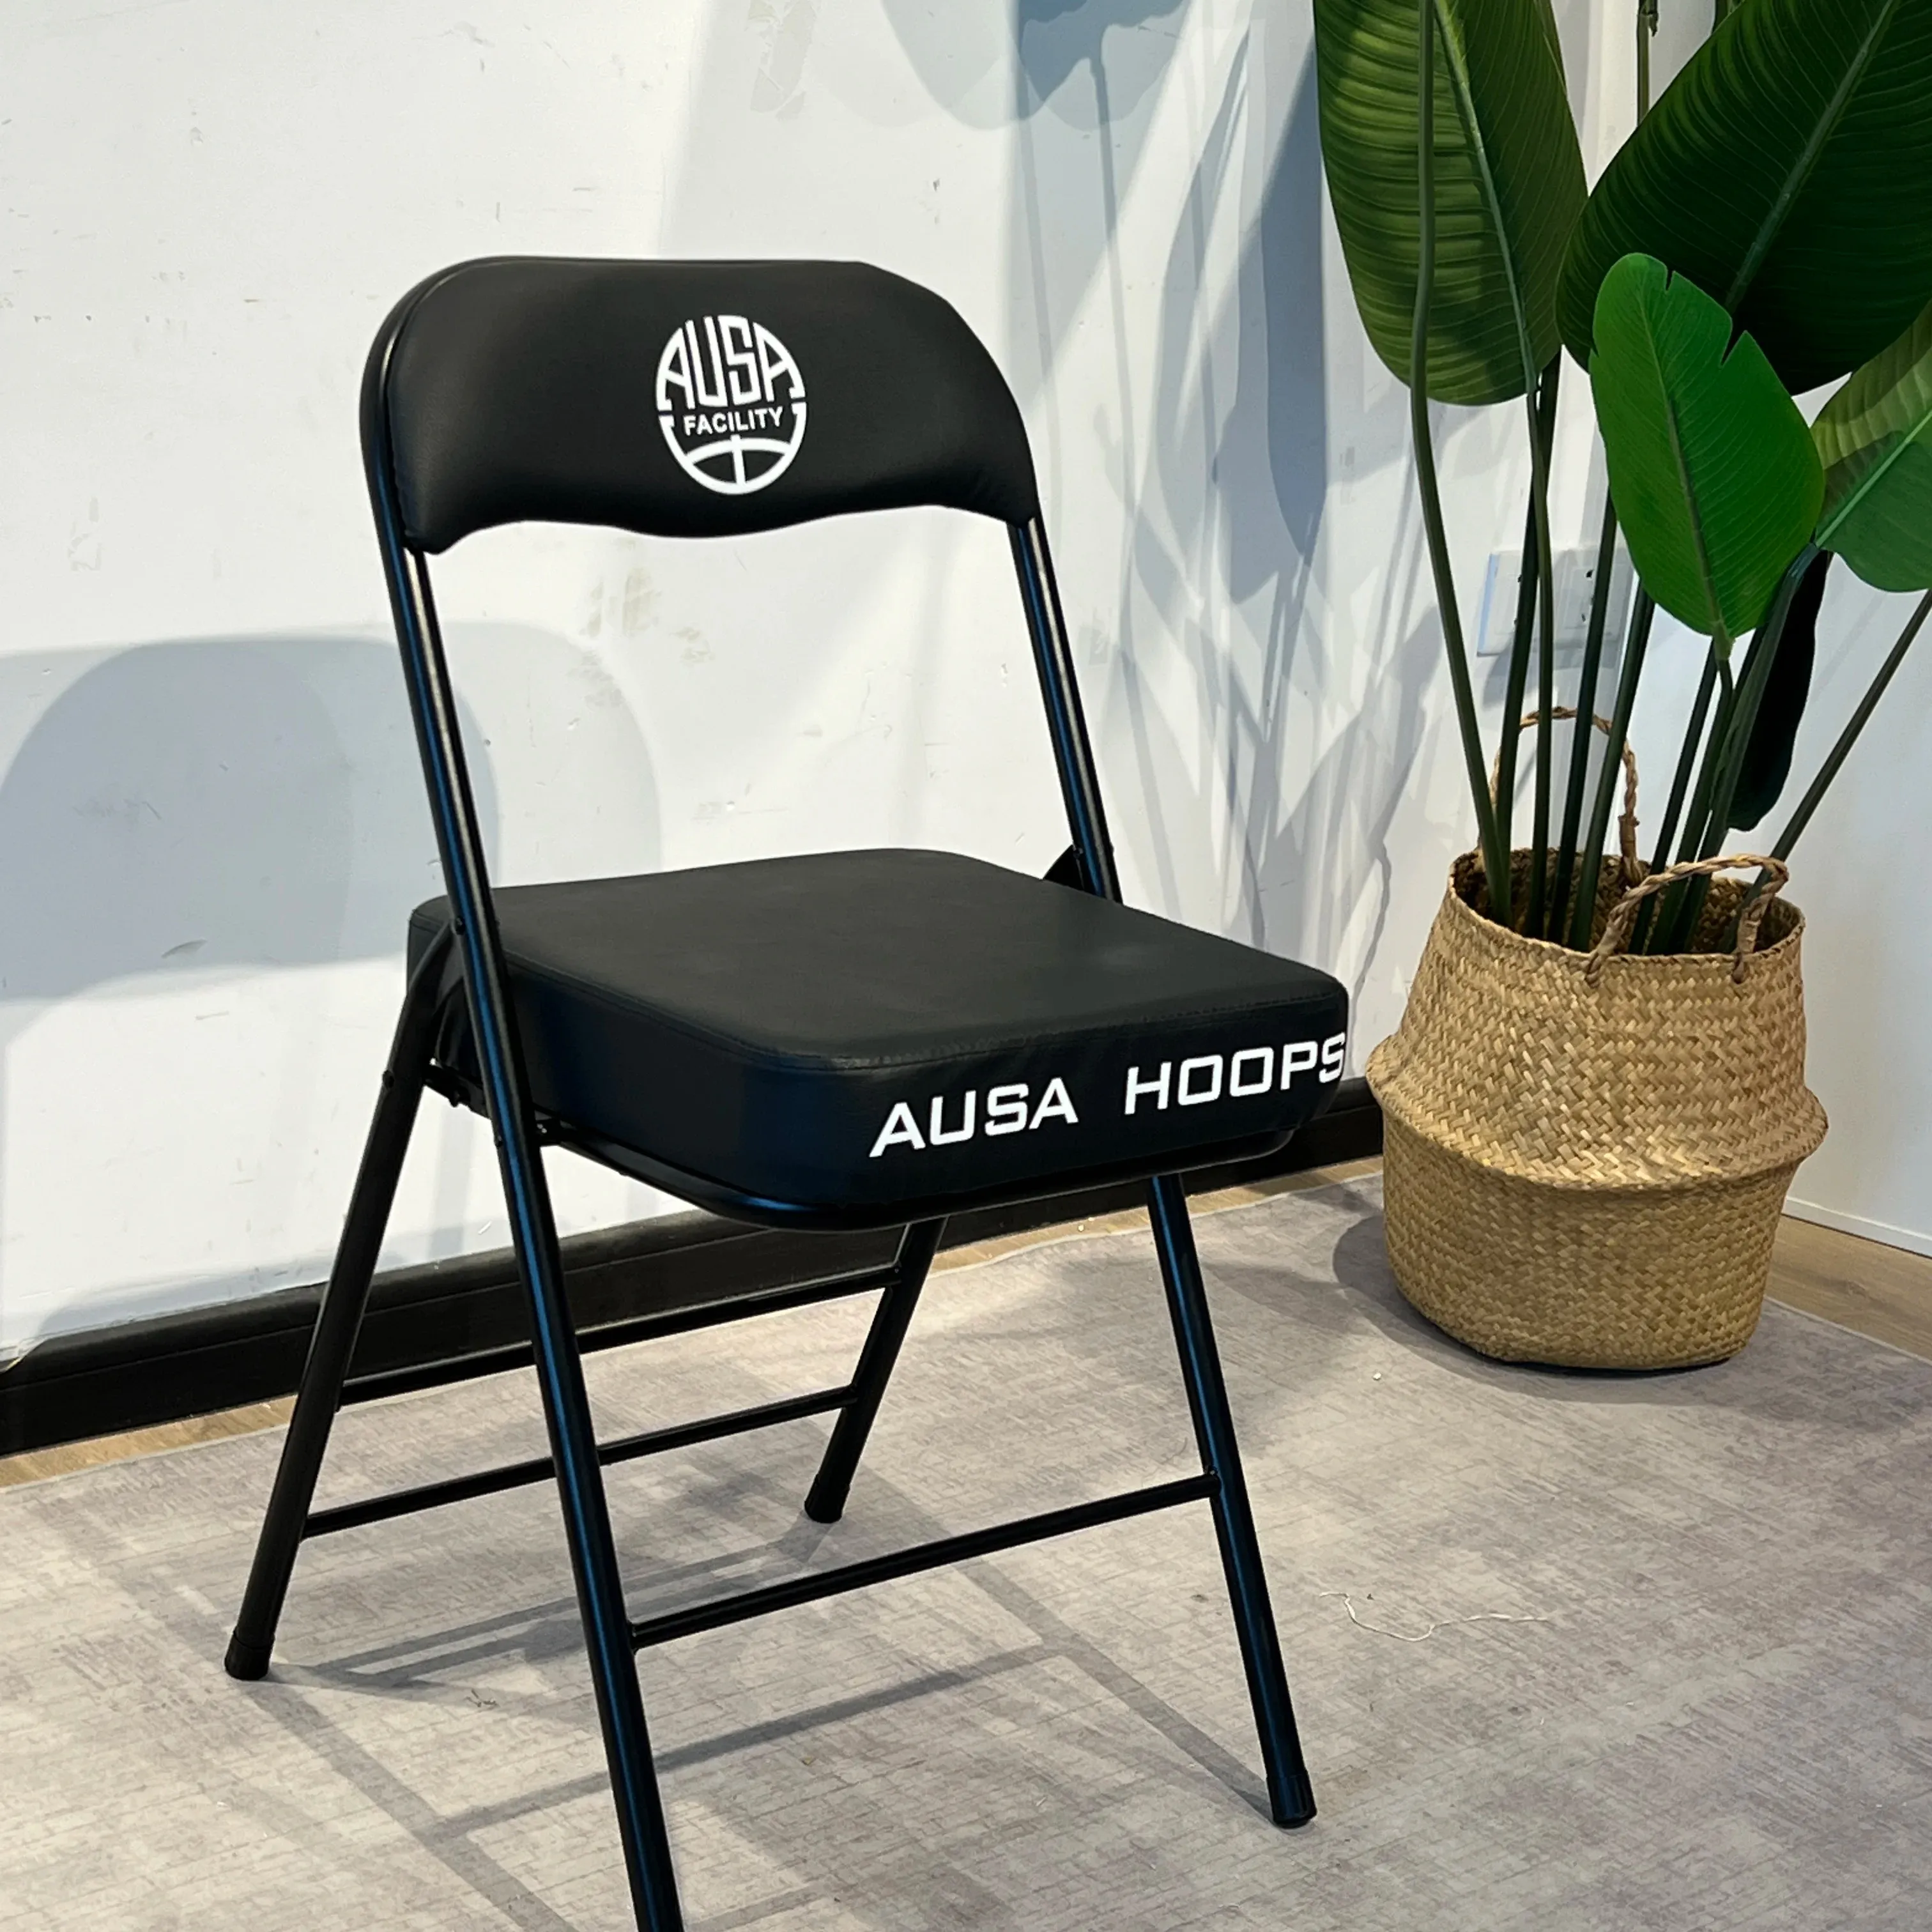 Barato personalizado corte VIP Ringside silla plegable de metal para el deporte al aire libre hogar jardín banquete evento plegable estadio Silla de gimnasio